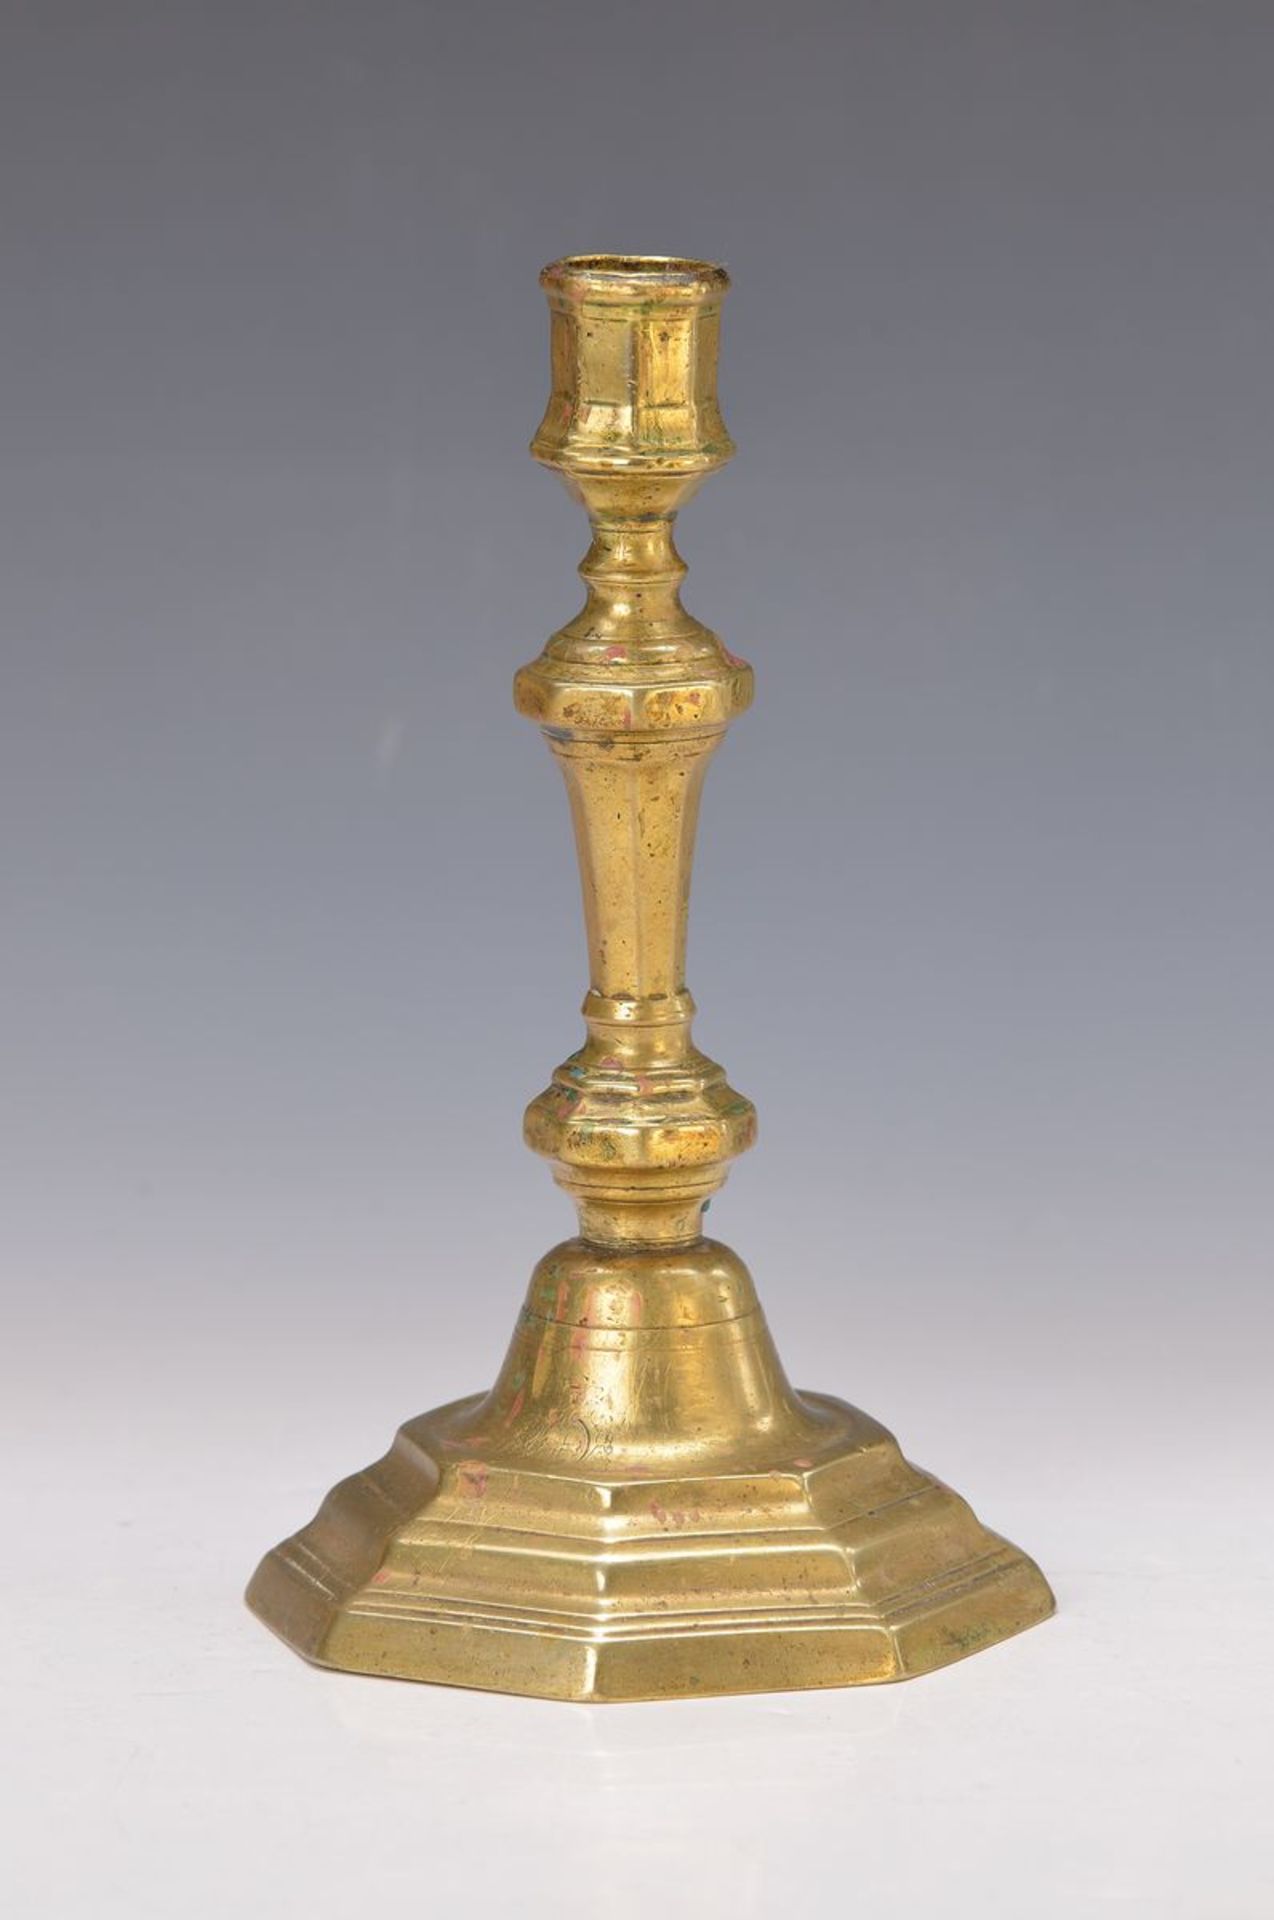 Leuchter, deutsch, 18. Jh., Bronzeguß, mit Wappendekor, Tropffänger fehlt, H. ca. 24 cm,